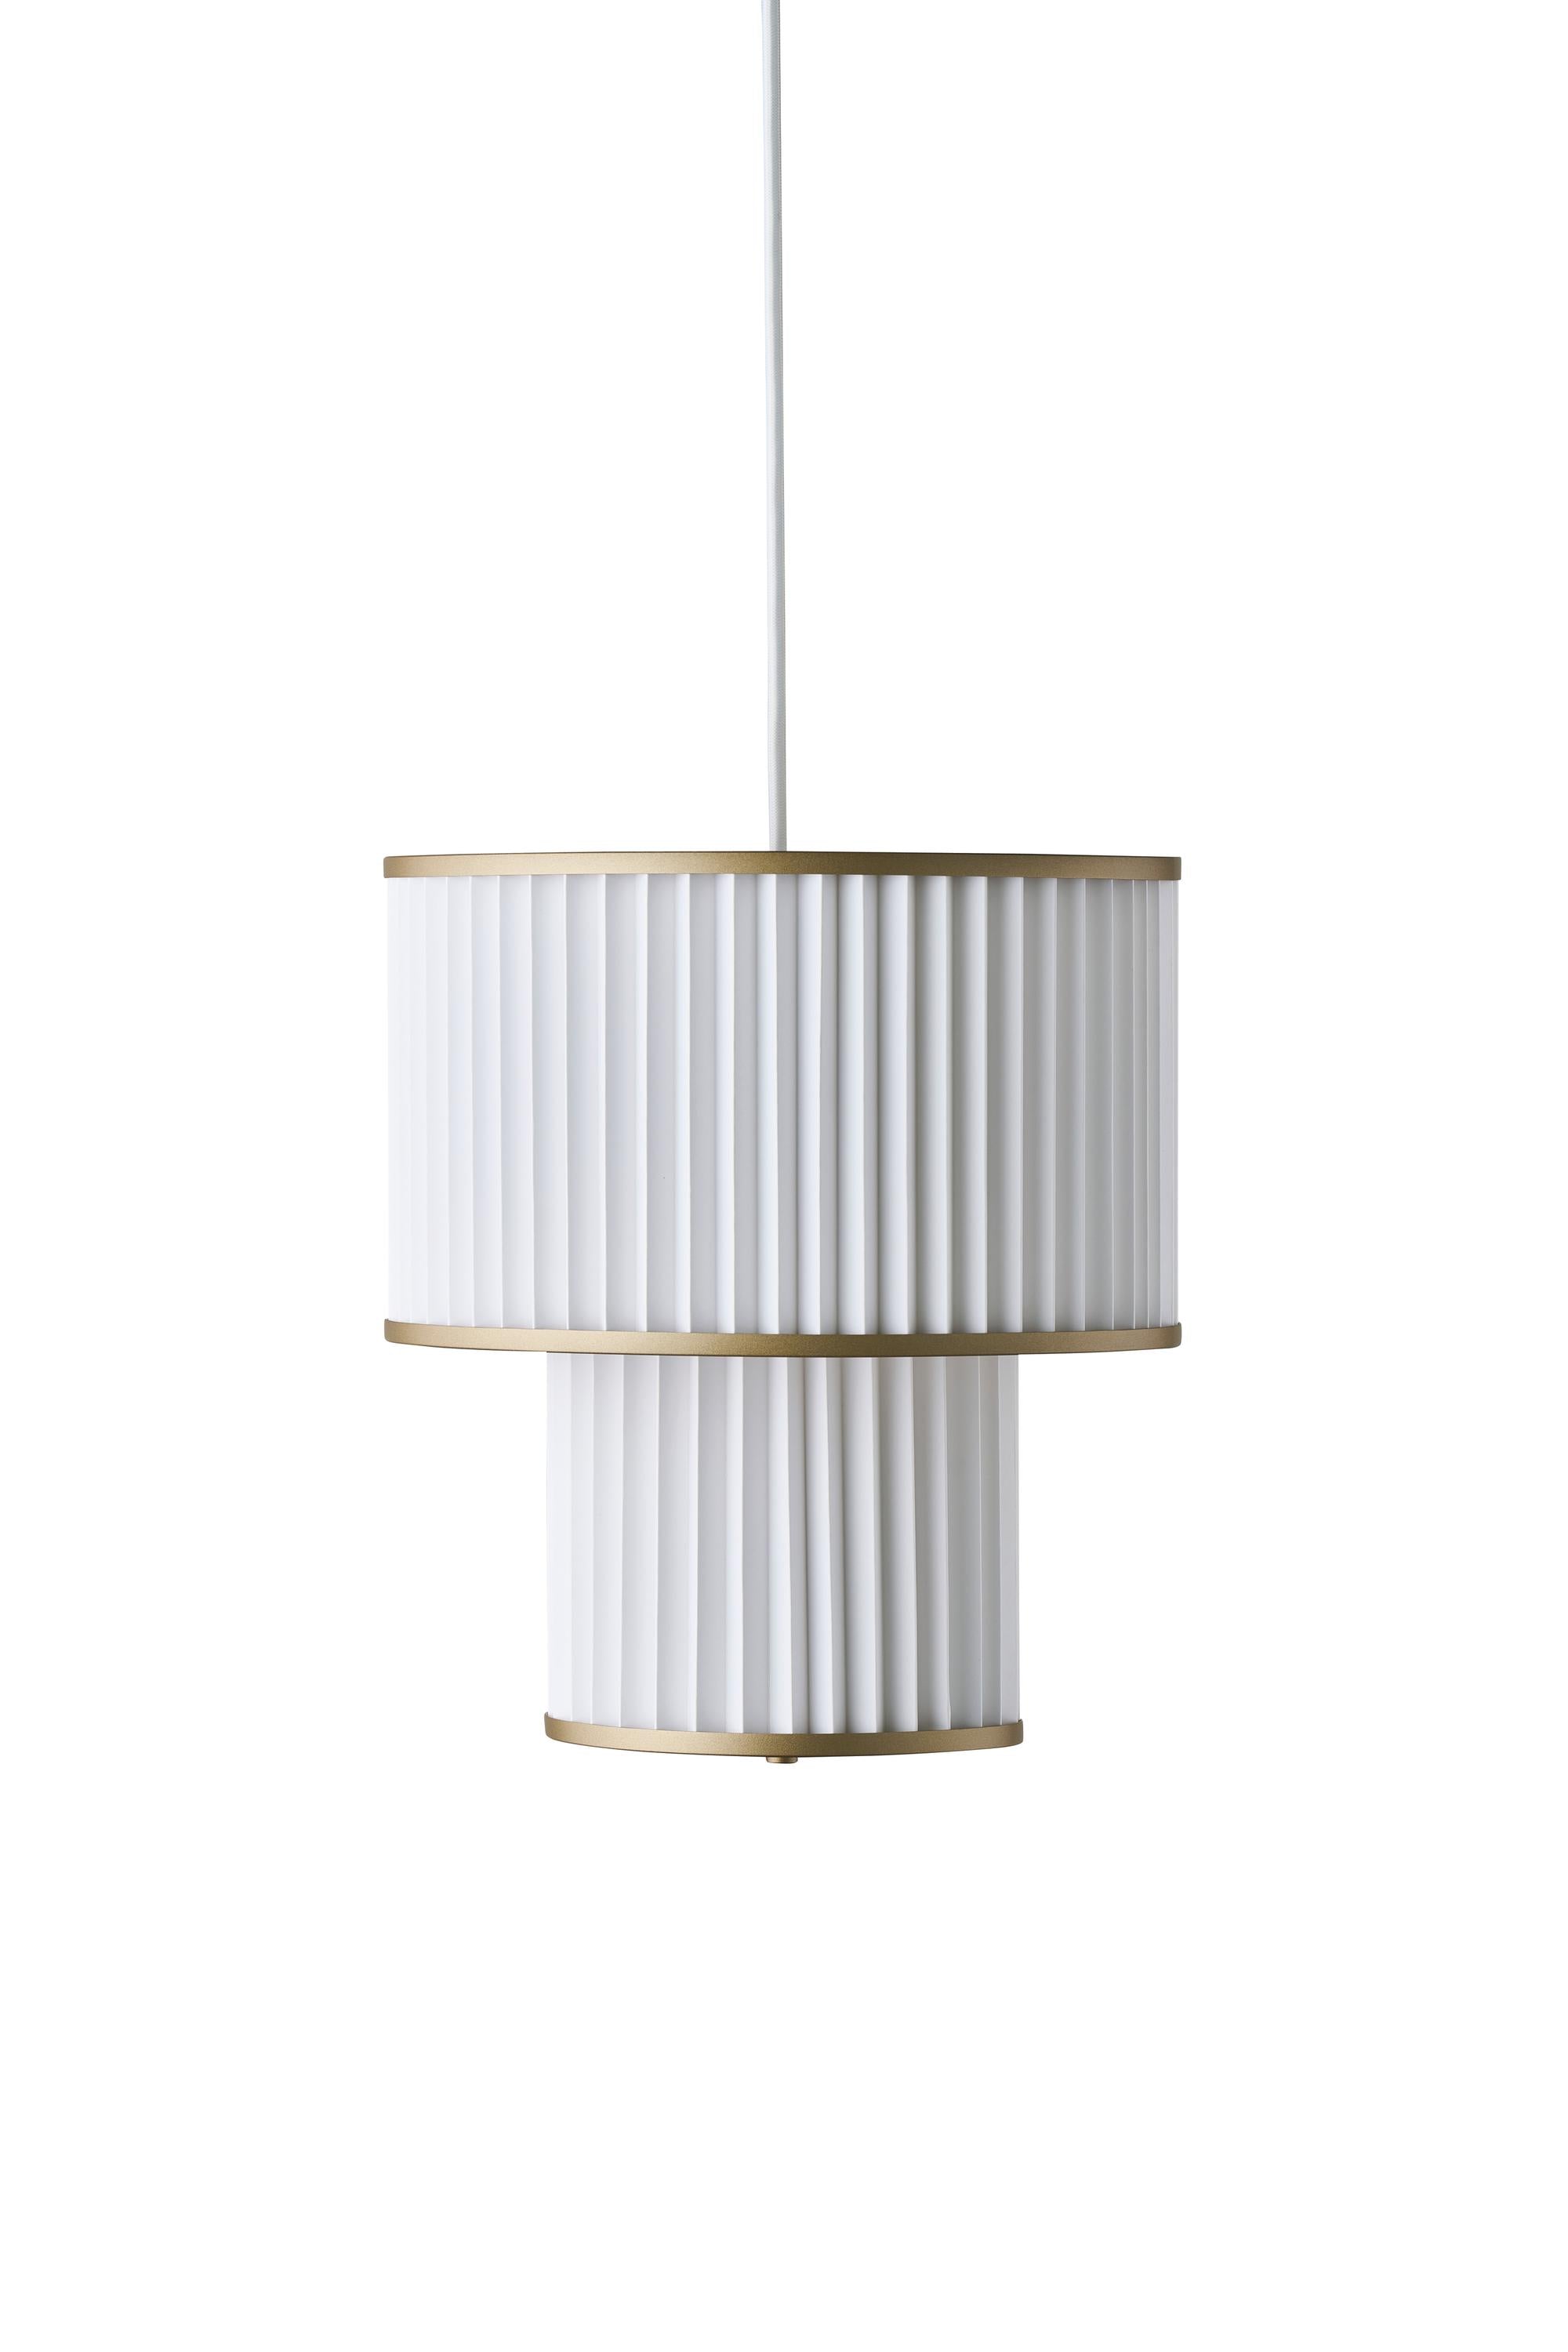 Le Klint PLIVELLO Lampe à suspension dorée / blanc avec 2 nuances (S M)